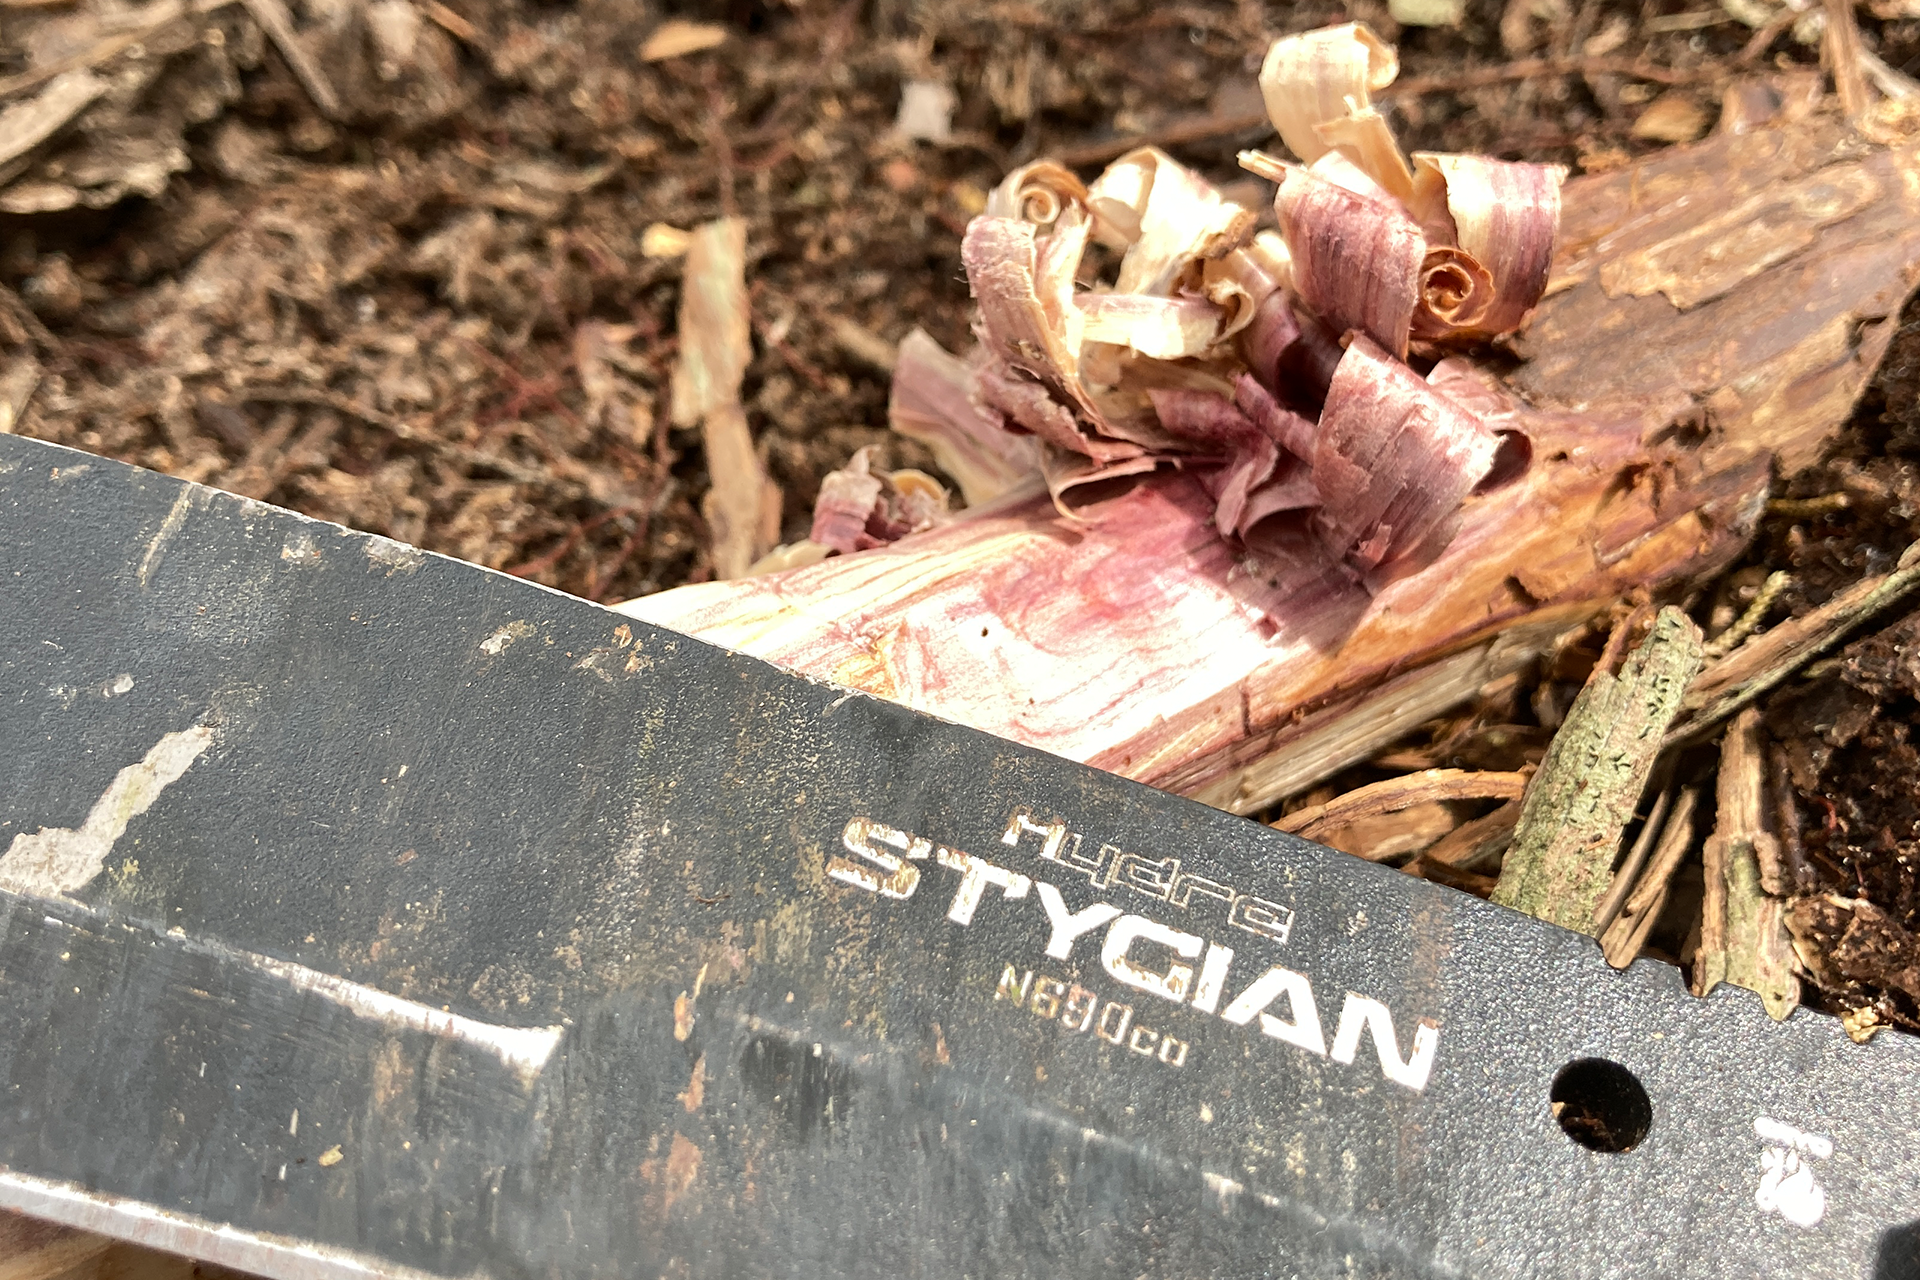 Stygian Survival Knife